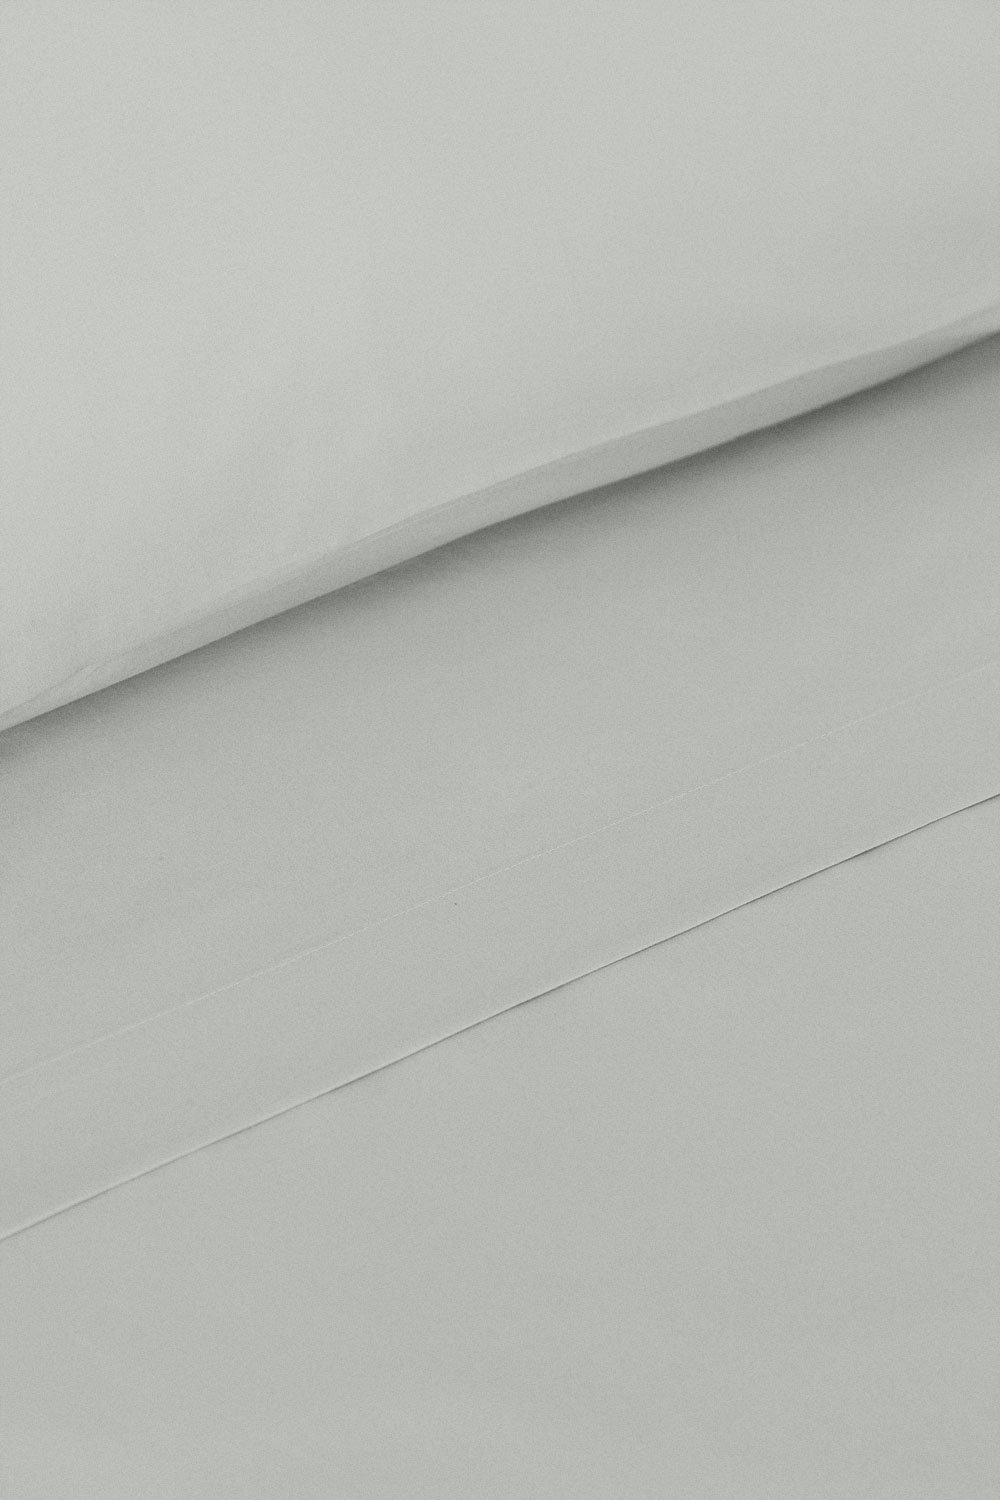 Lençol plano de algodão percal 180 fios para cama de 90 cm Agassi, imagem de galeria 2